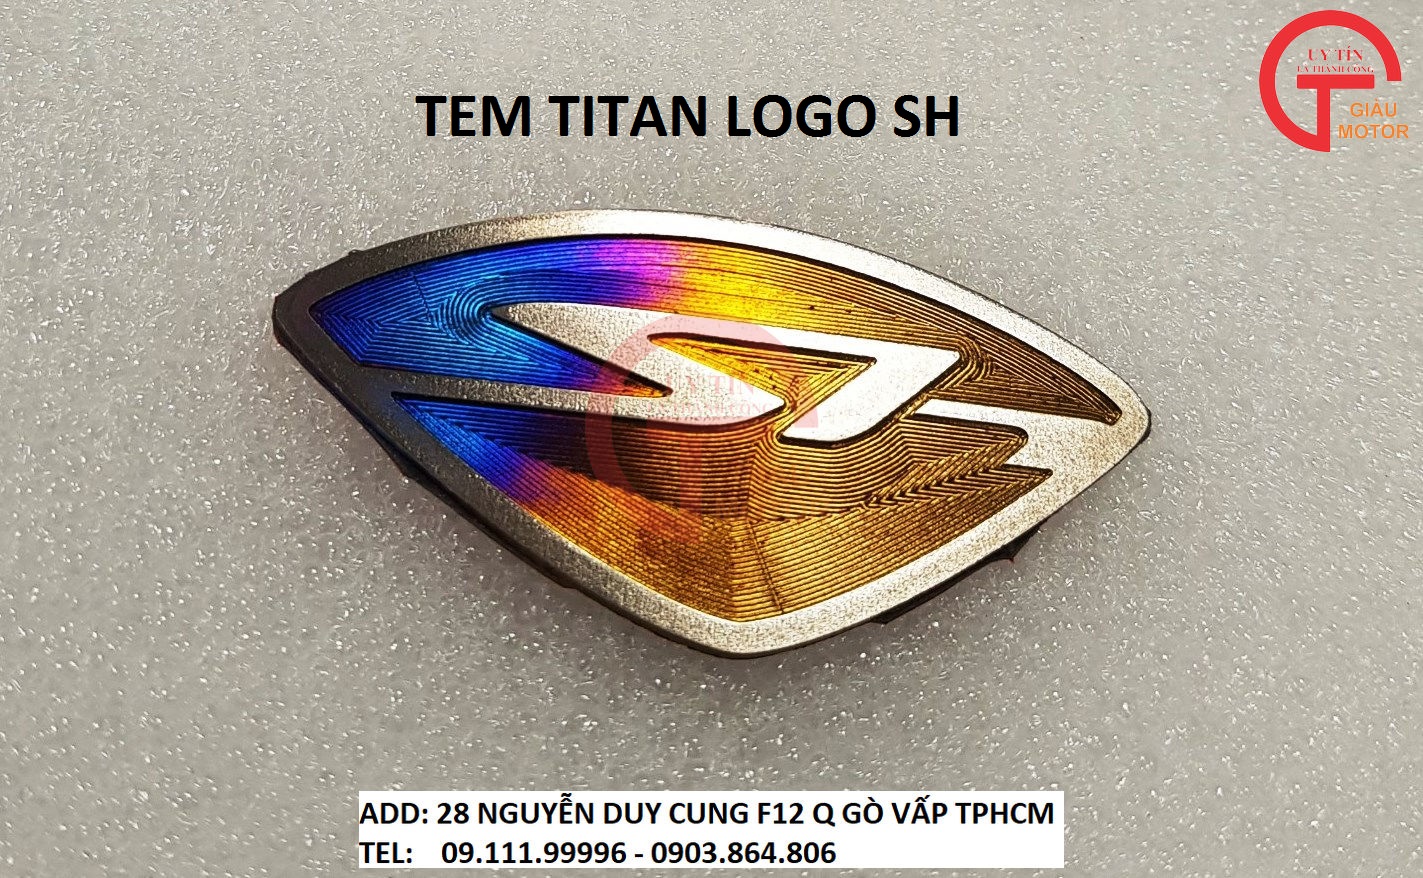 Giảm giá Tem titan logo sh tinh sảo,bền đẹp dán xe honda sh - BeeCost